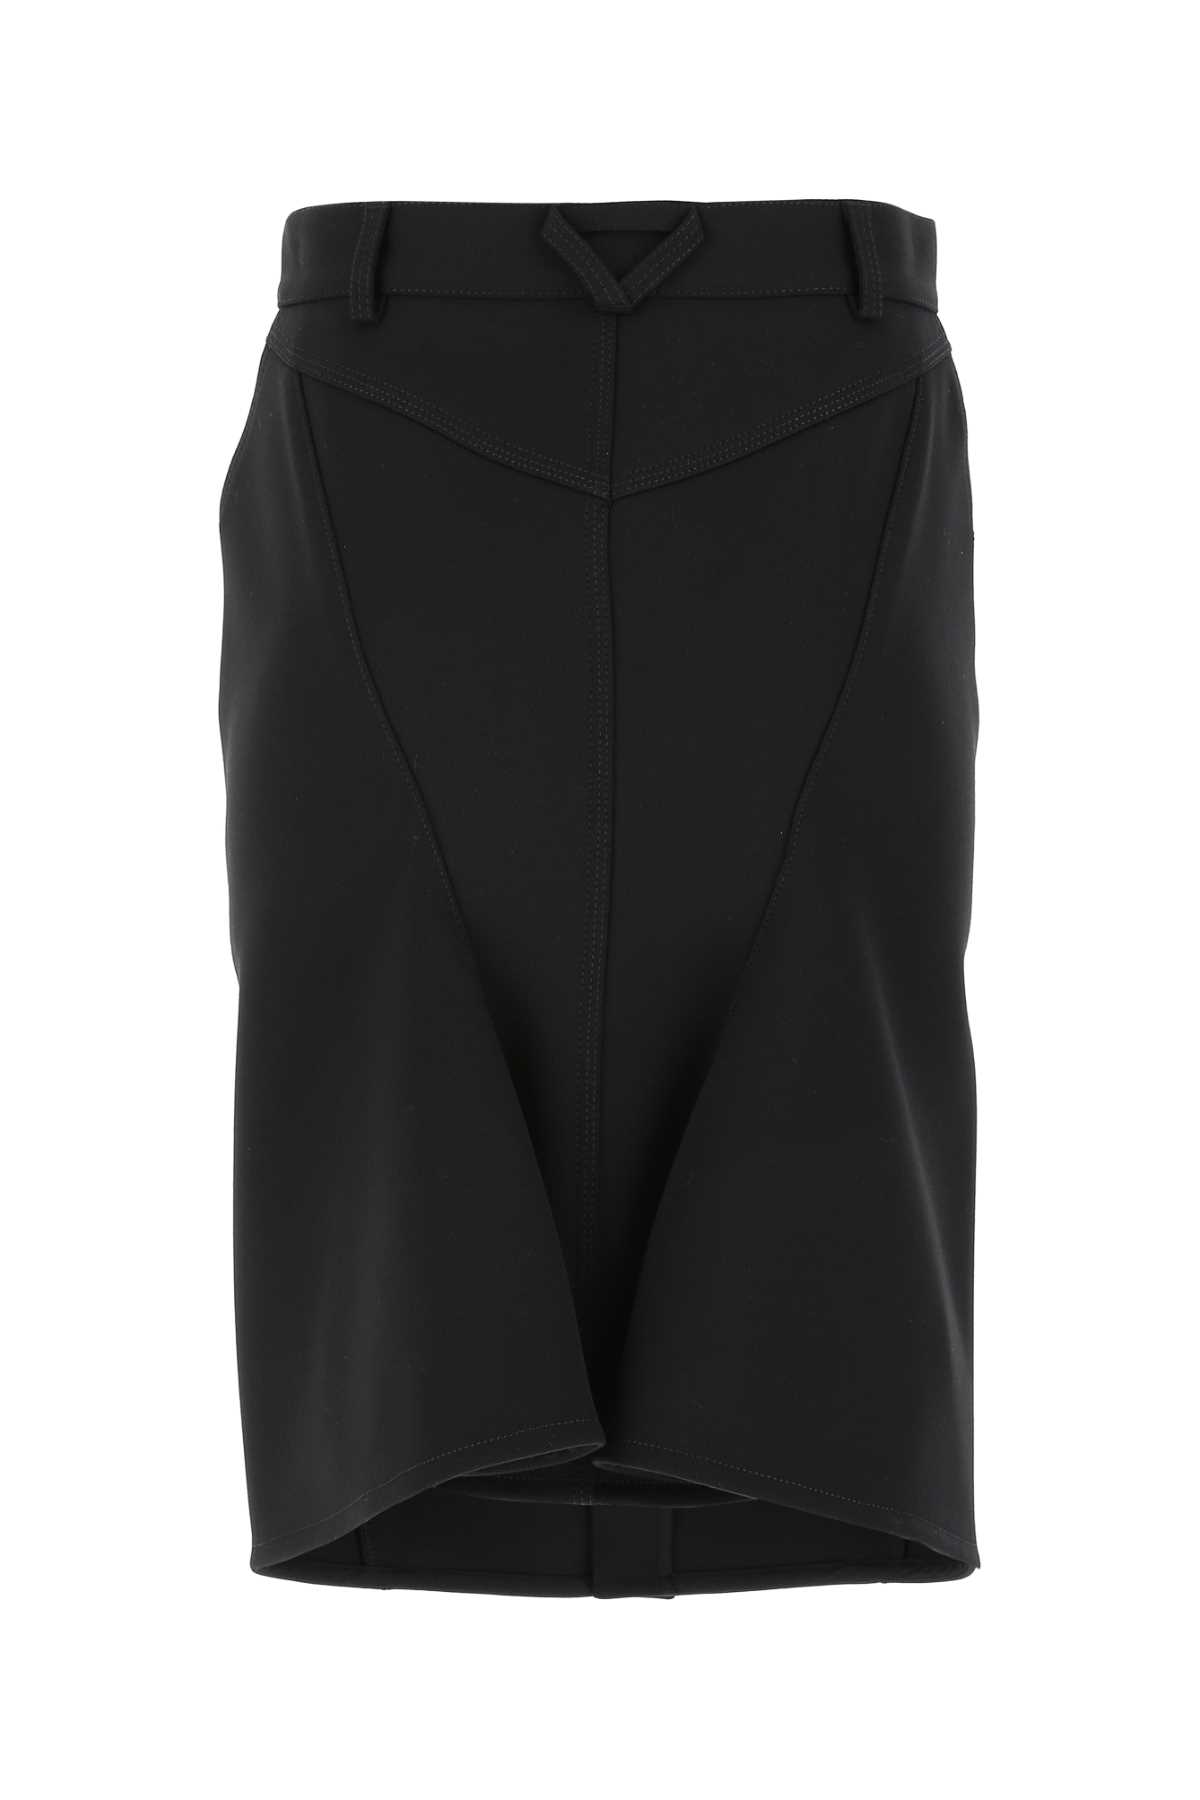 Bottega Veneta Black Stretch Wool Blend Skirt In 1000